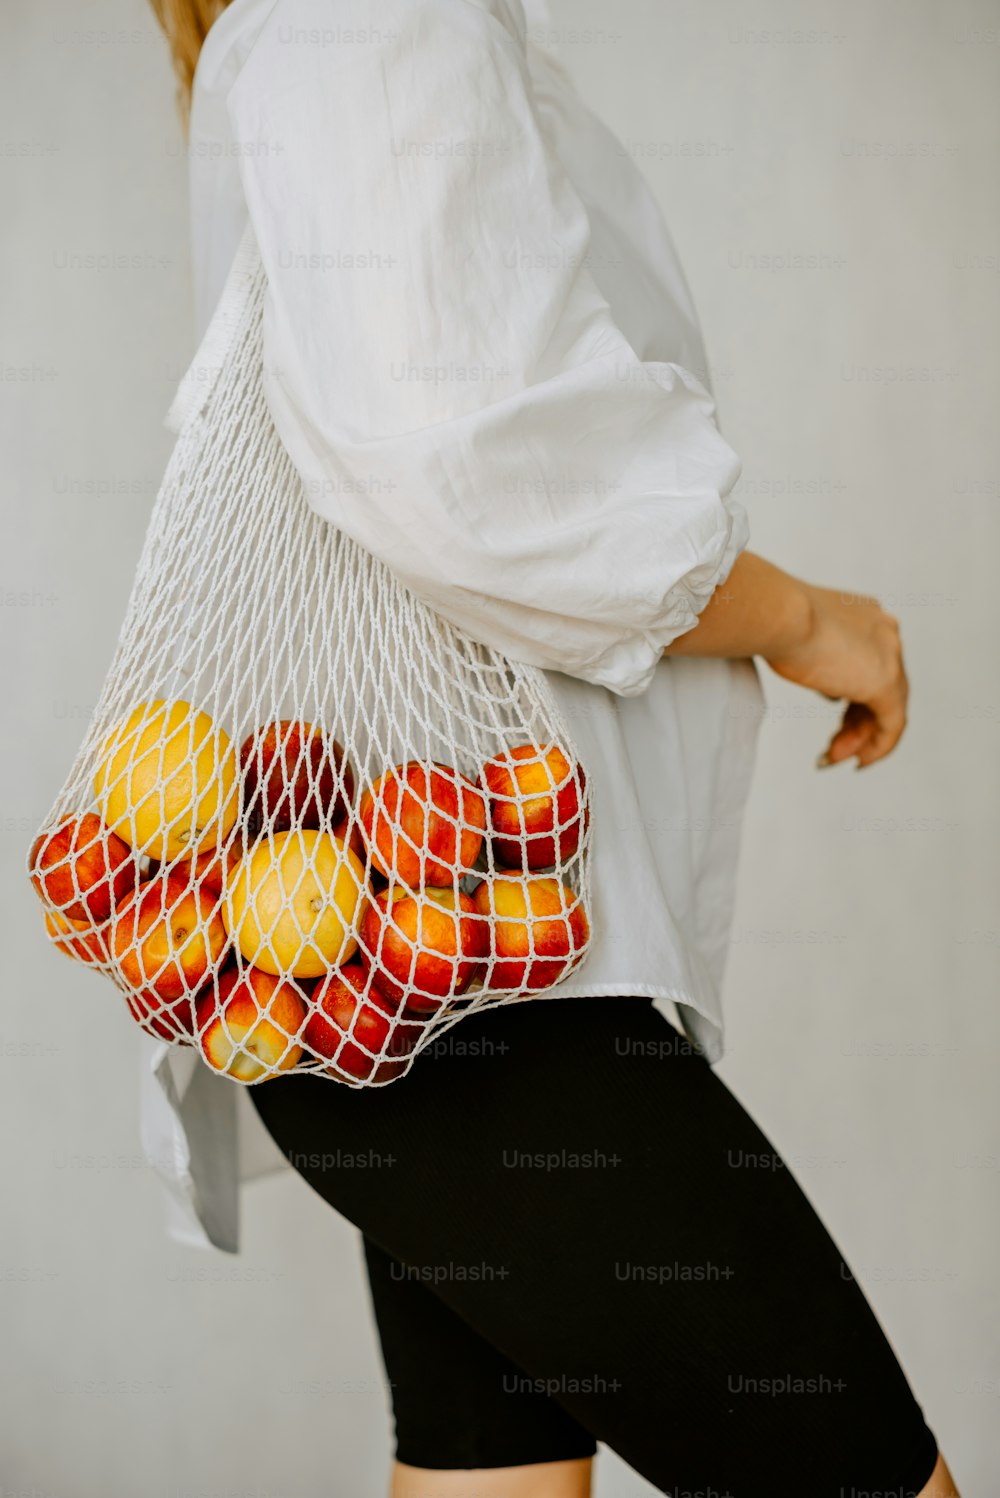 Eine Frau, die einen Netzsack voller Orangen trägt